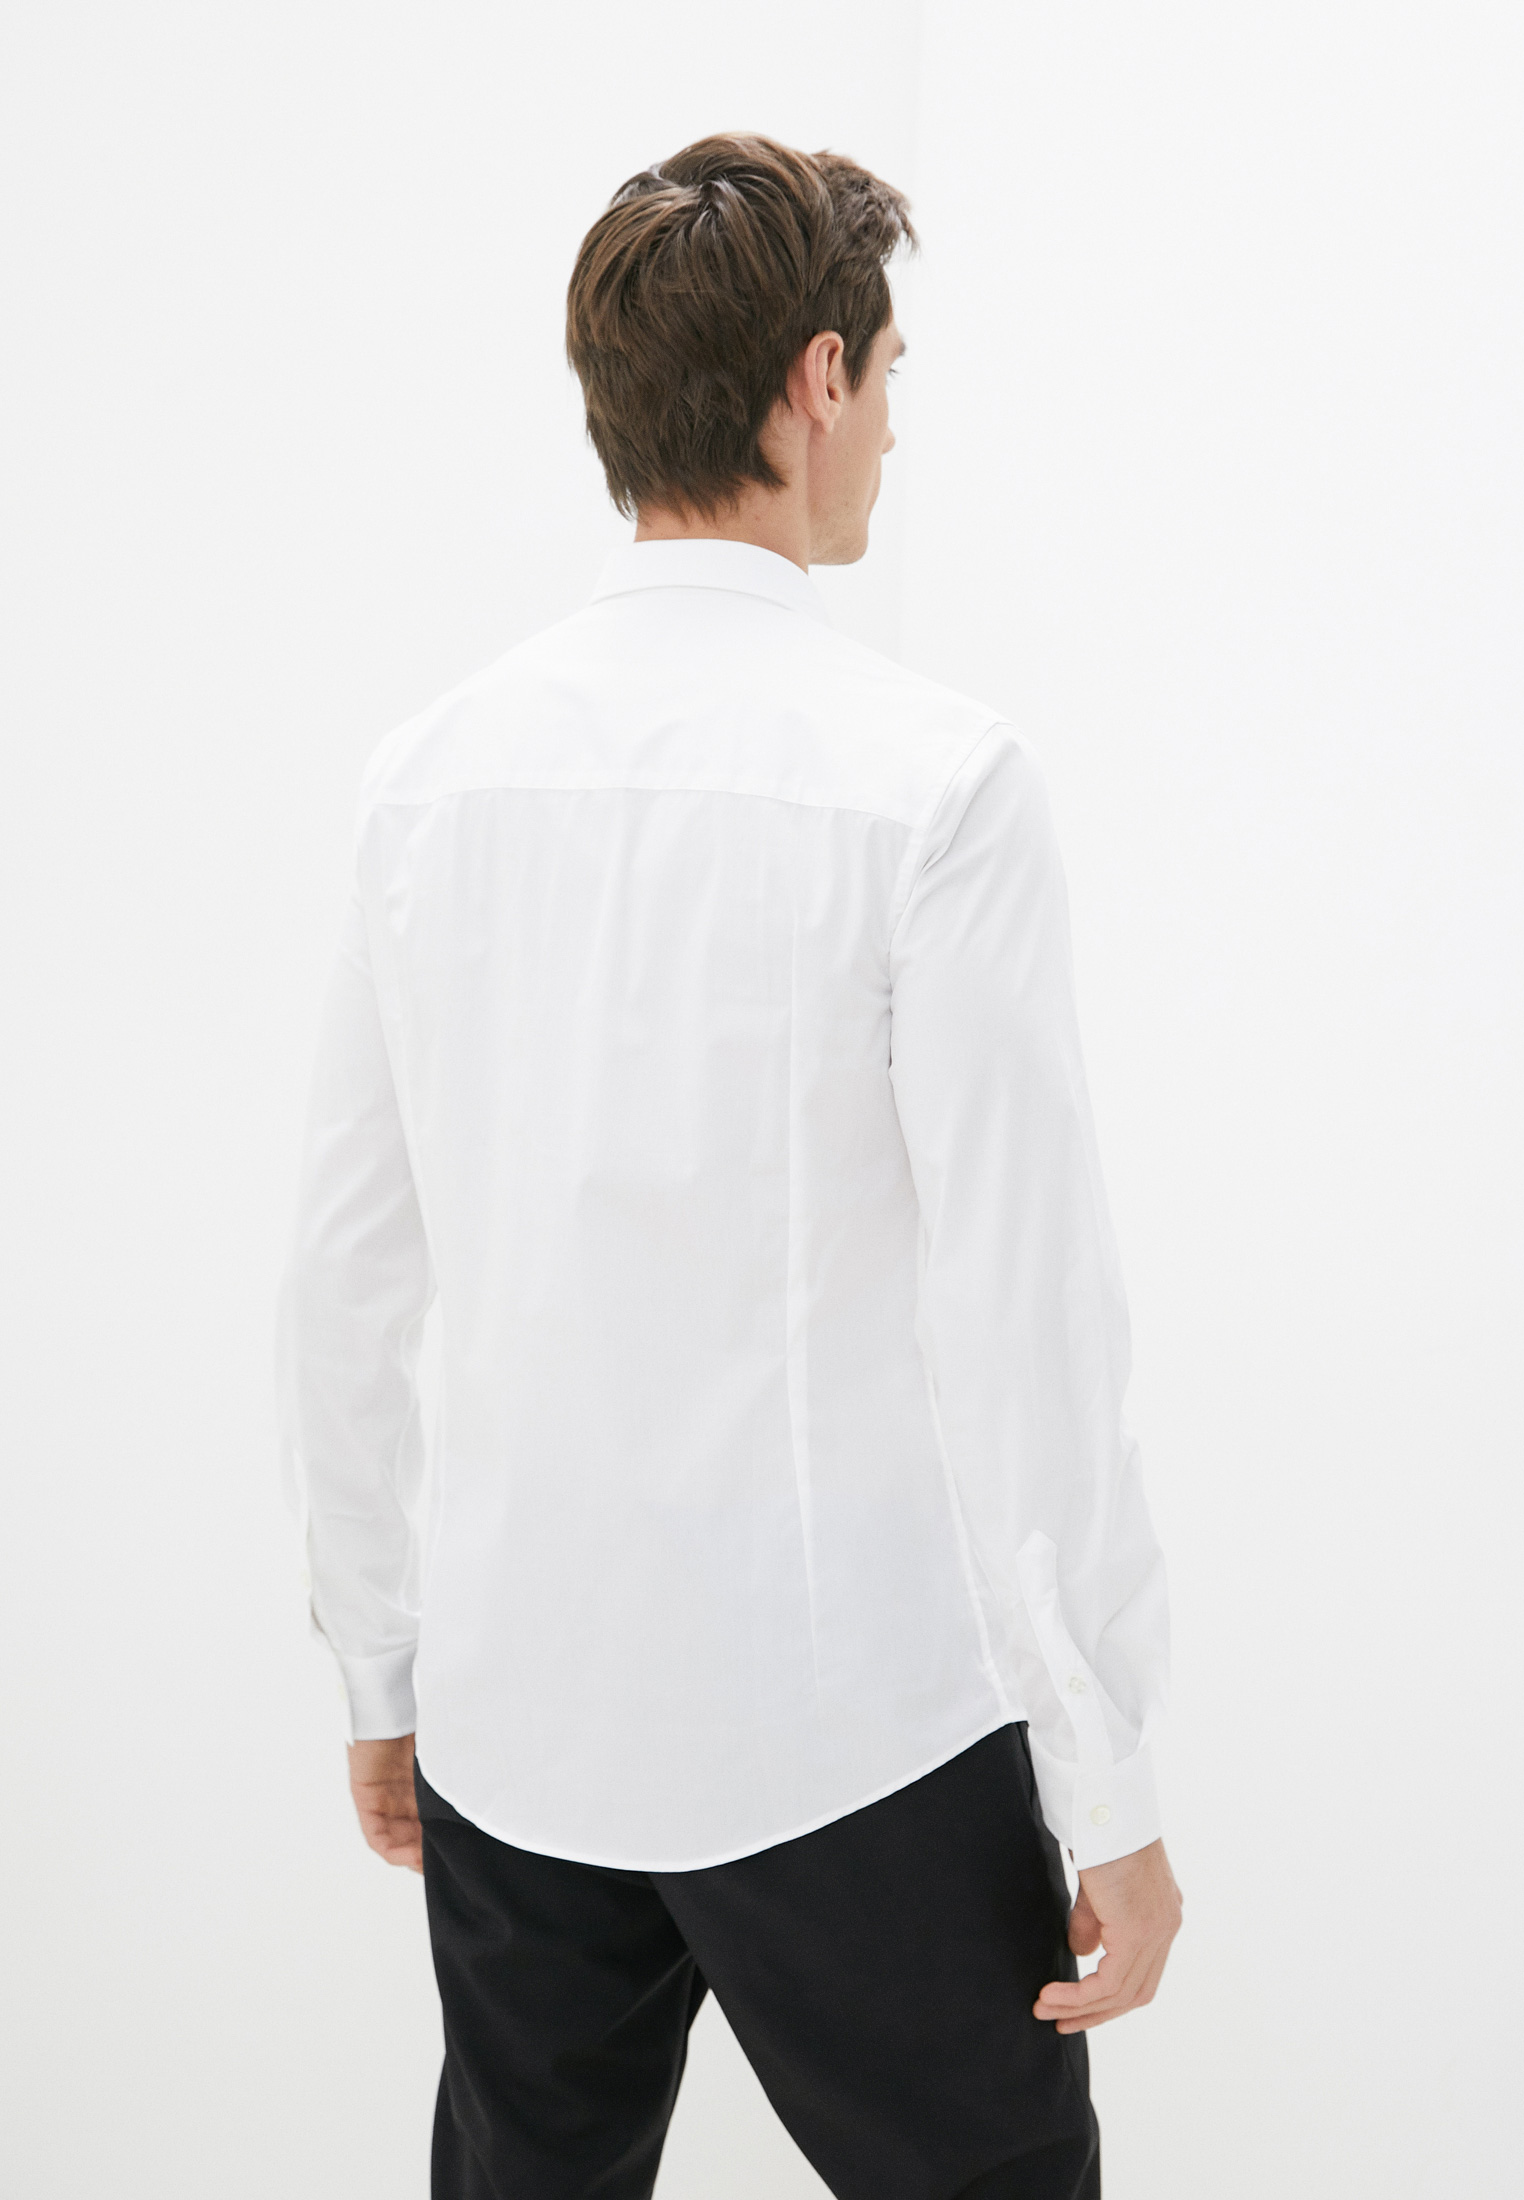 Рубашка с длинным рукавом Bikkembergs (Биккембергс) C C 055 80 S 2931: изображение 4